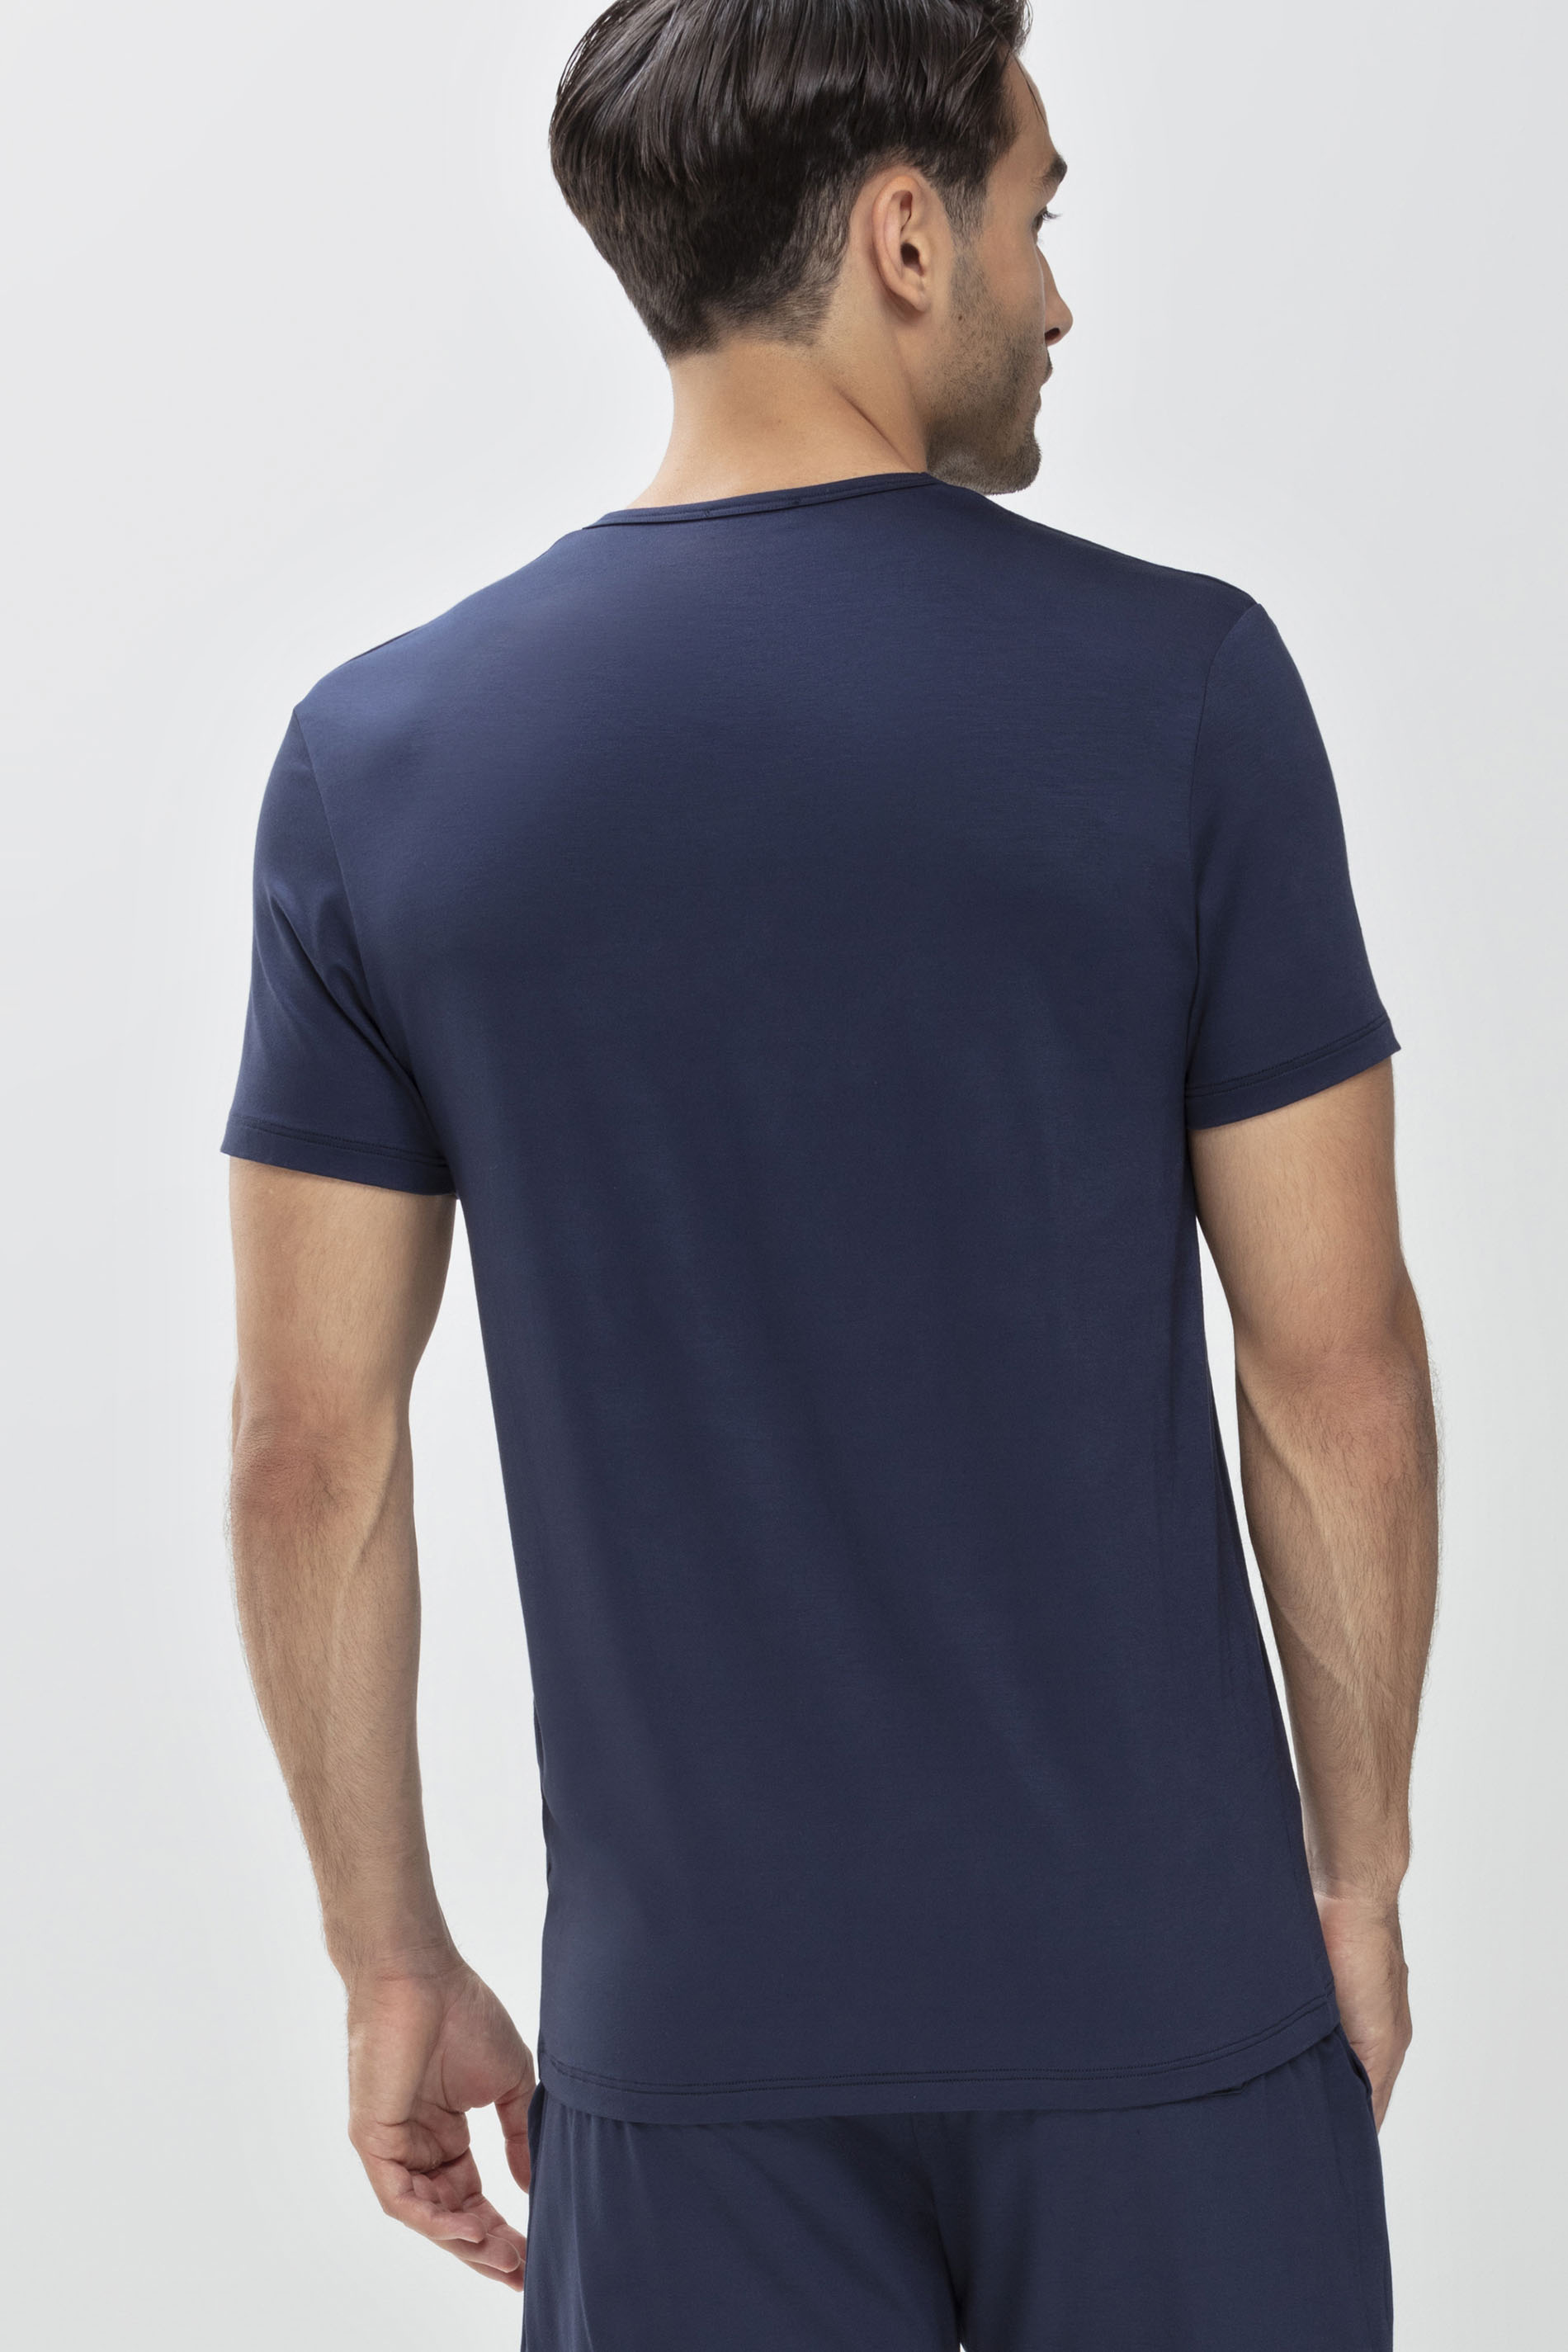 T-Shirt Yacht Blue Serie Jefferson Modal Achteraanzicht | mey®